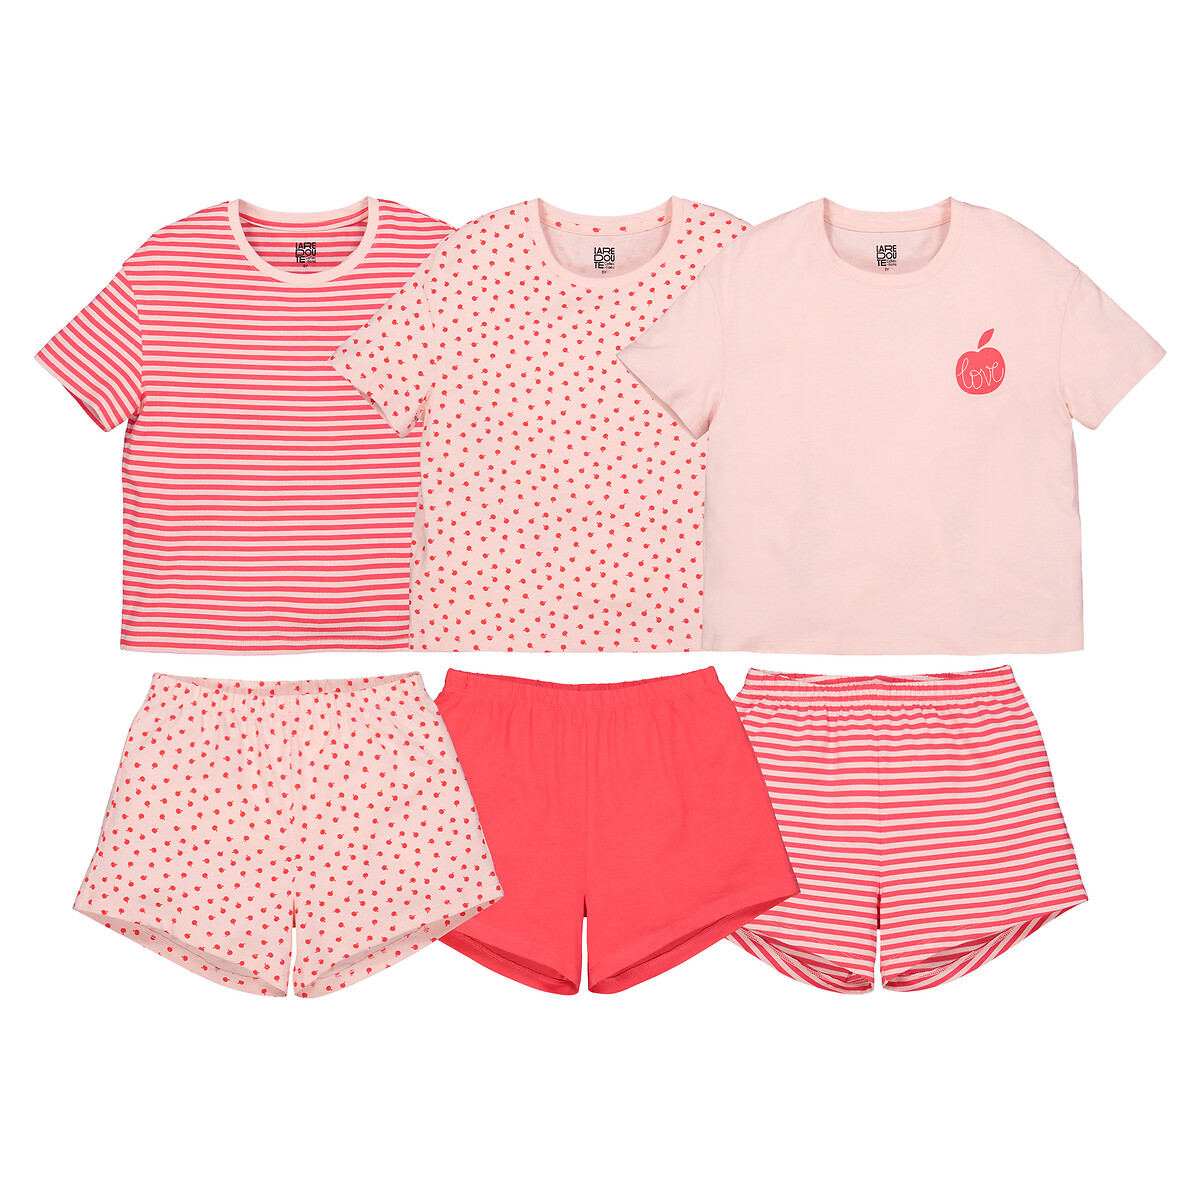 Комплект из трех пижам La Redoute 4 года - 102 см розовый комплект из трех лонгсливов la redoute 4 года 102 см разноцветный